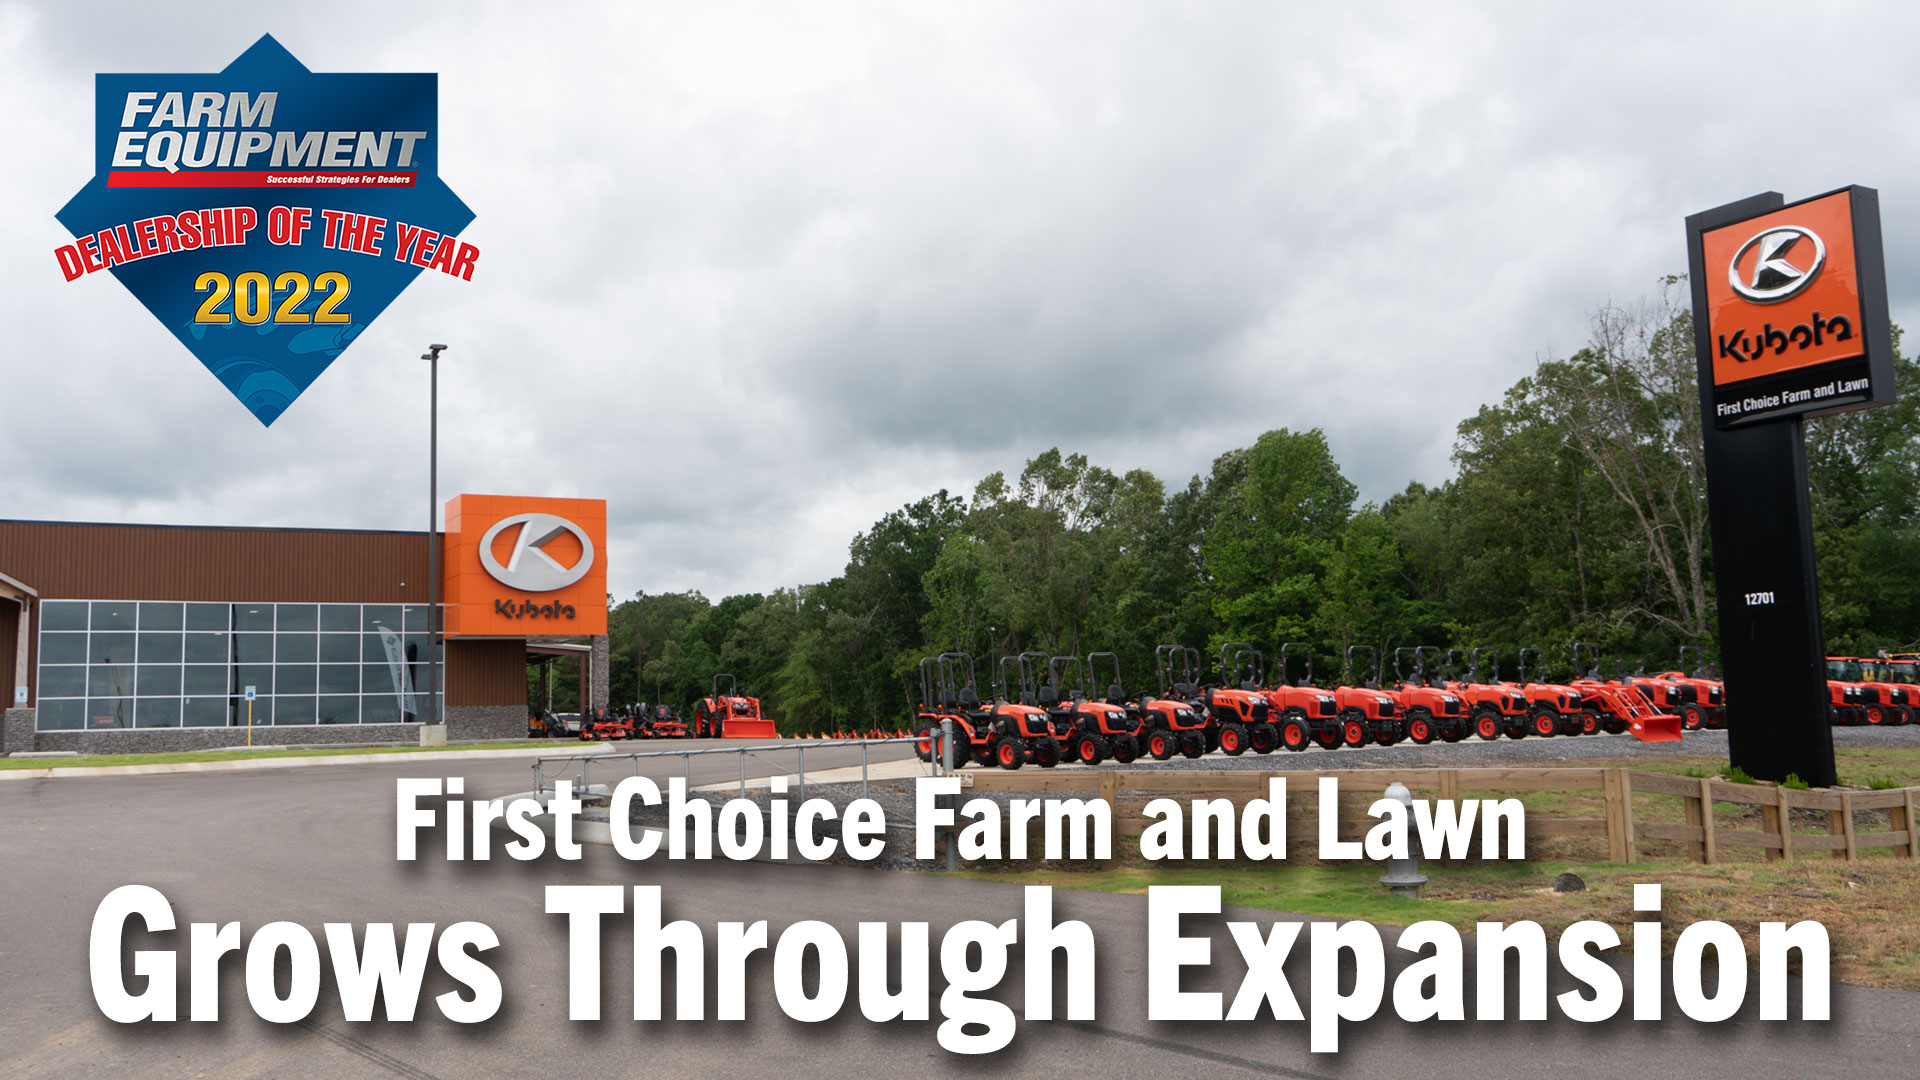 2-First-Choice-Farm-and-Lawn-Grows-Through-Expansion.jpg